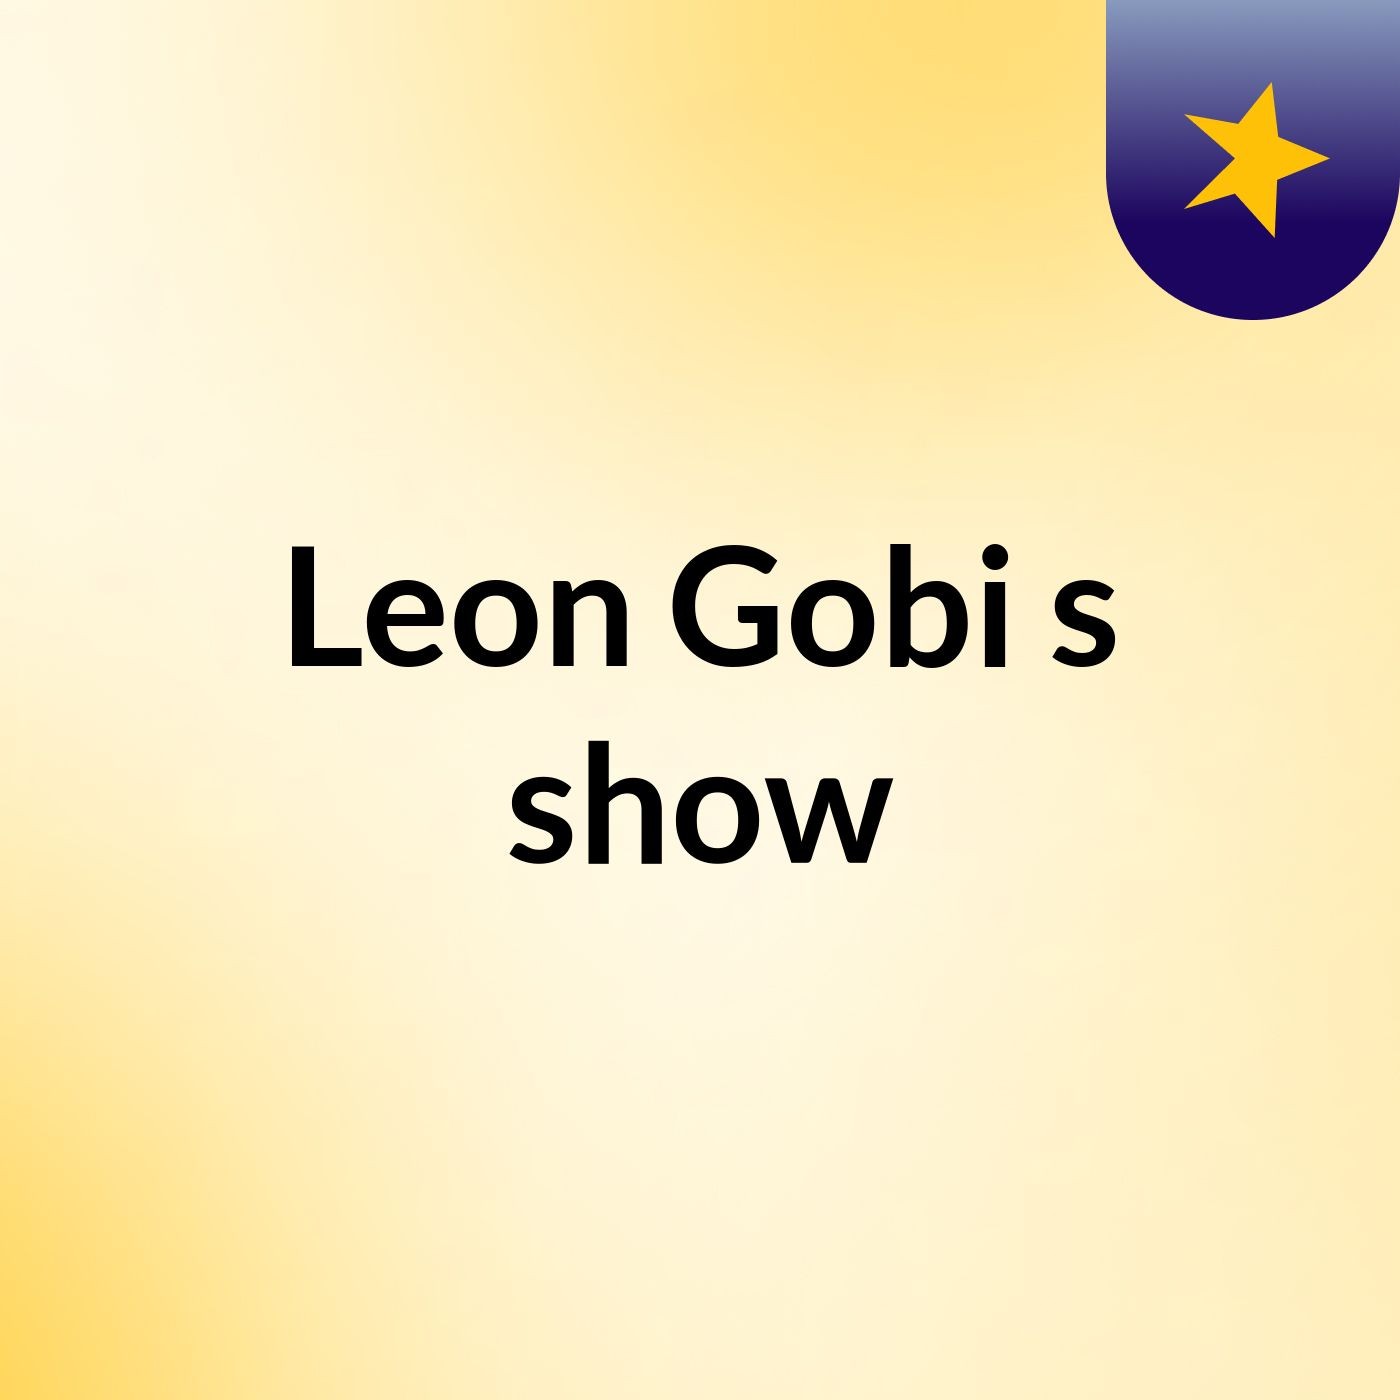 Leon Gobi's show